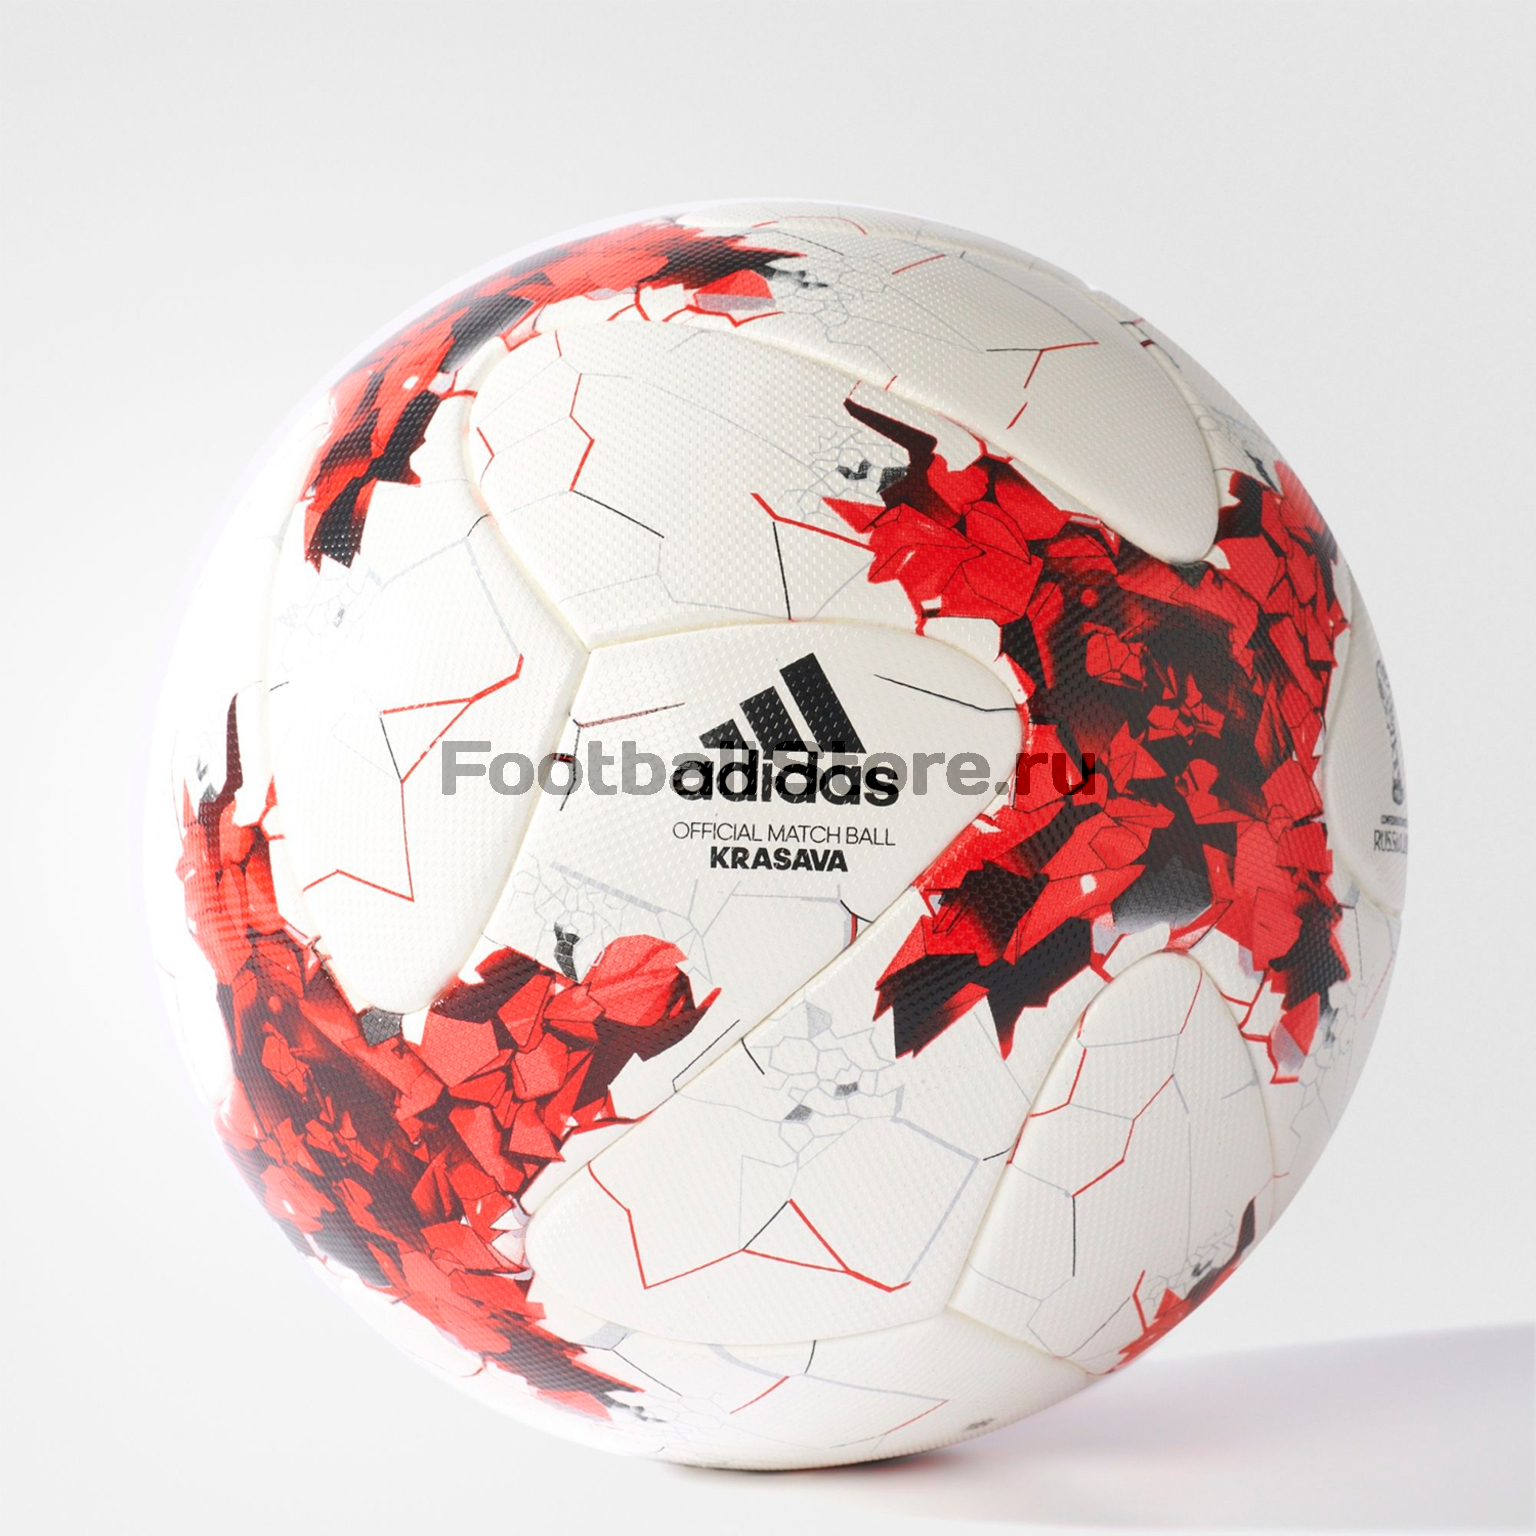 Официальный мяч Adidas FIFA Confed CUP 